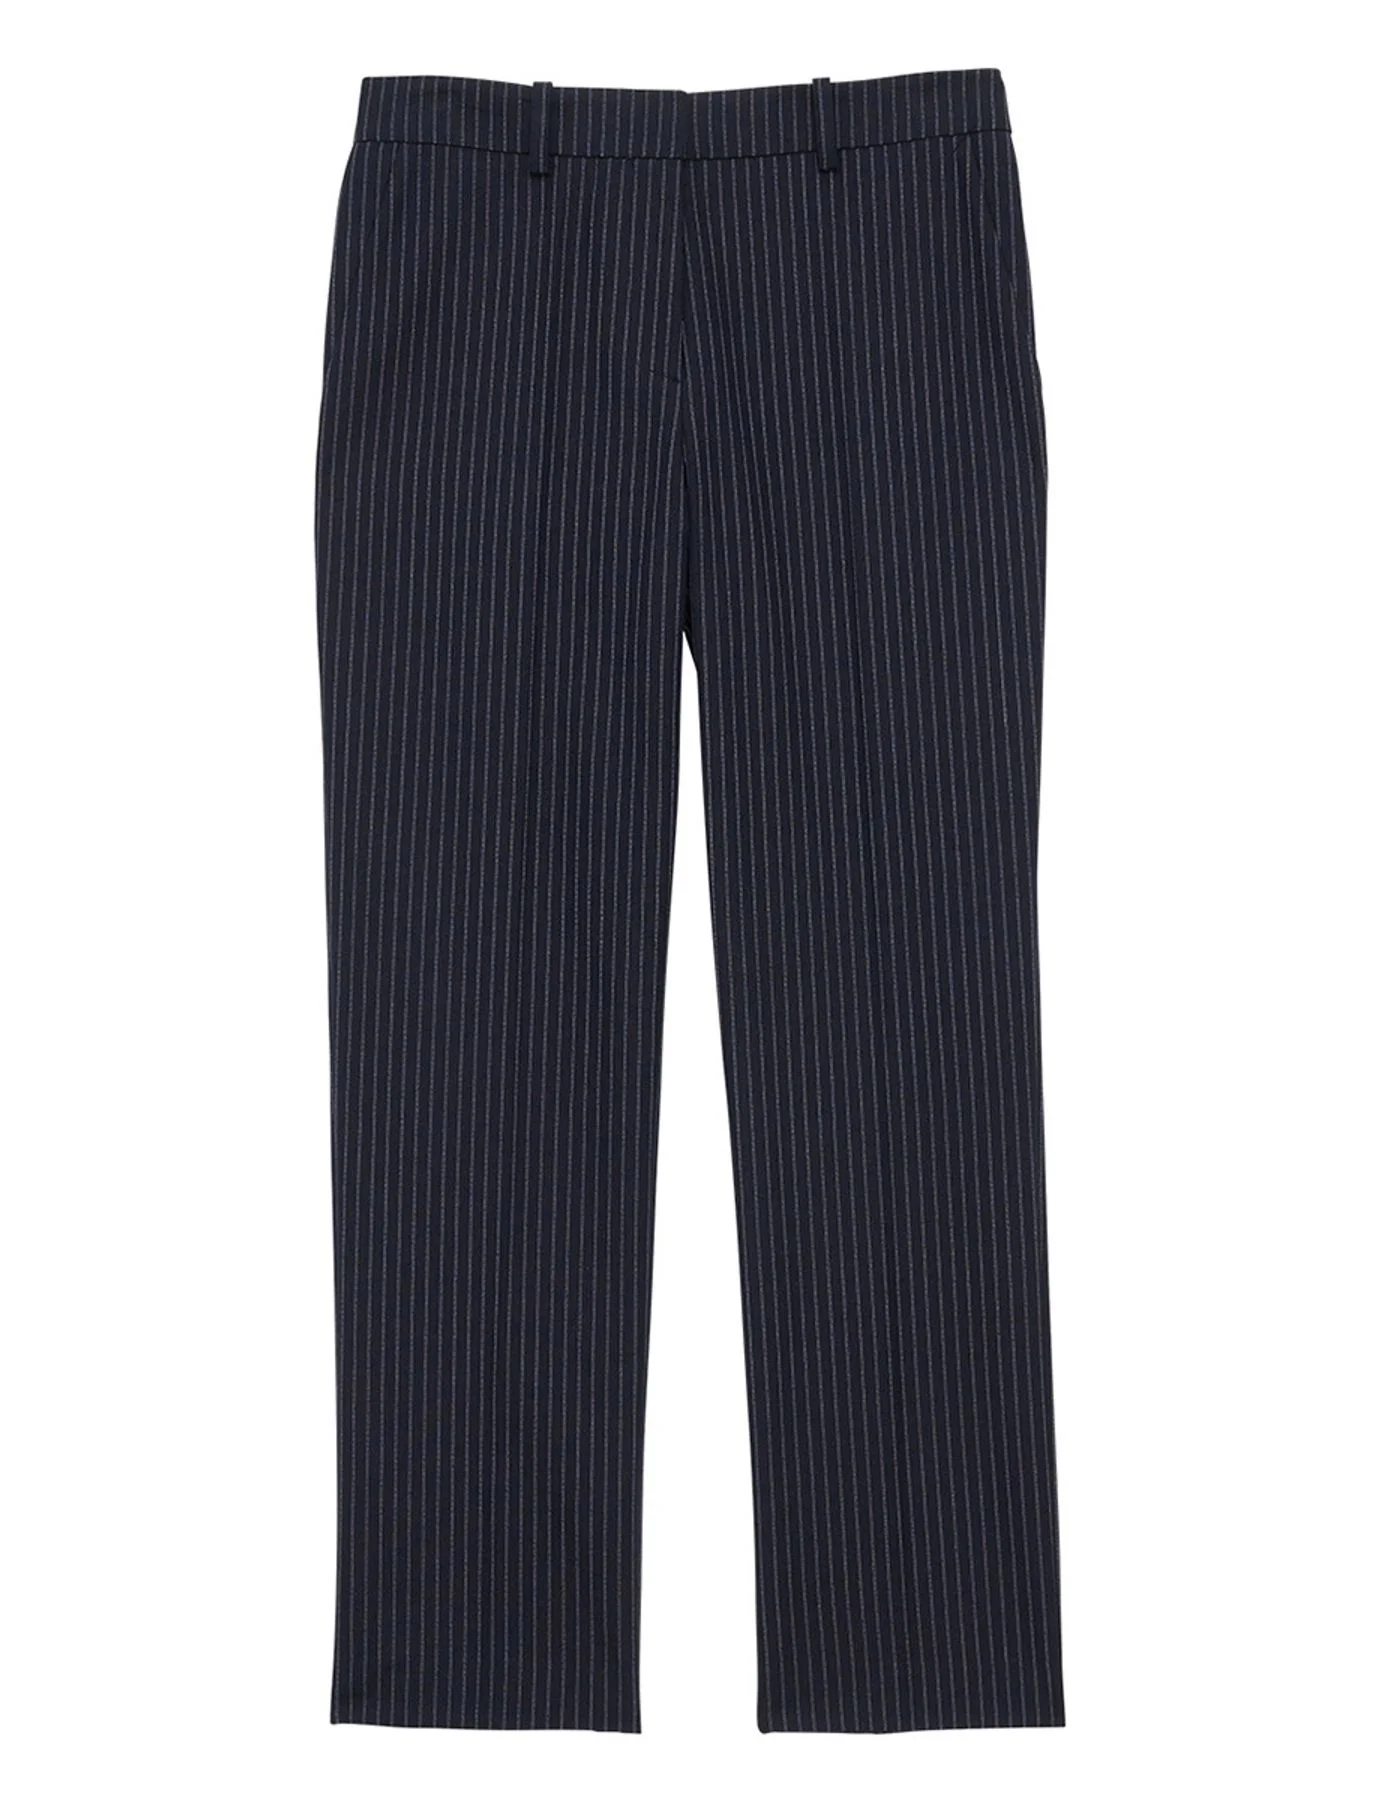 pantaloni-audrey-navy-a-fine-stripes